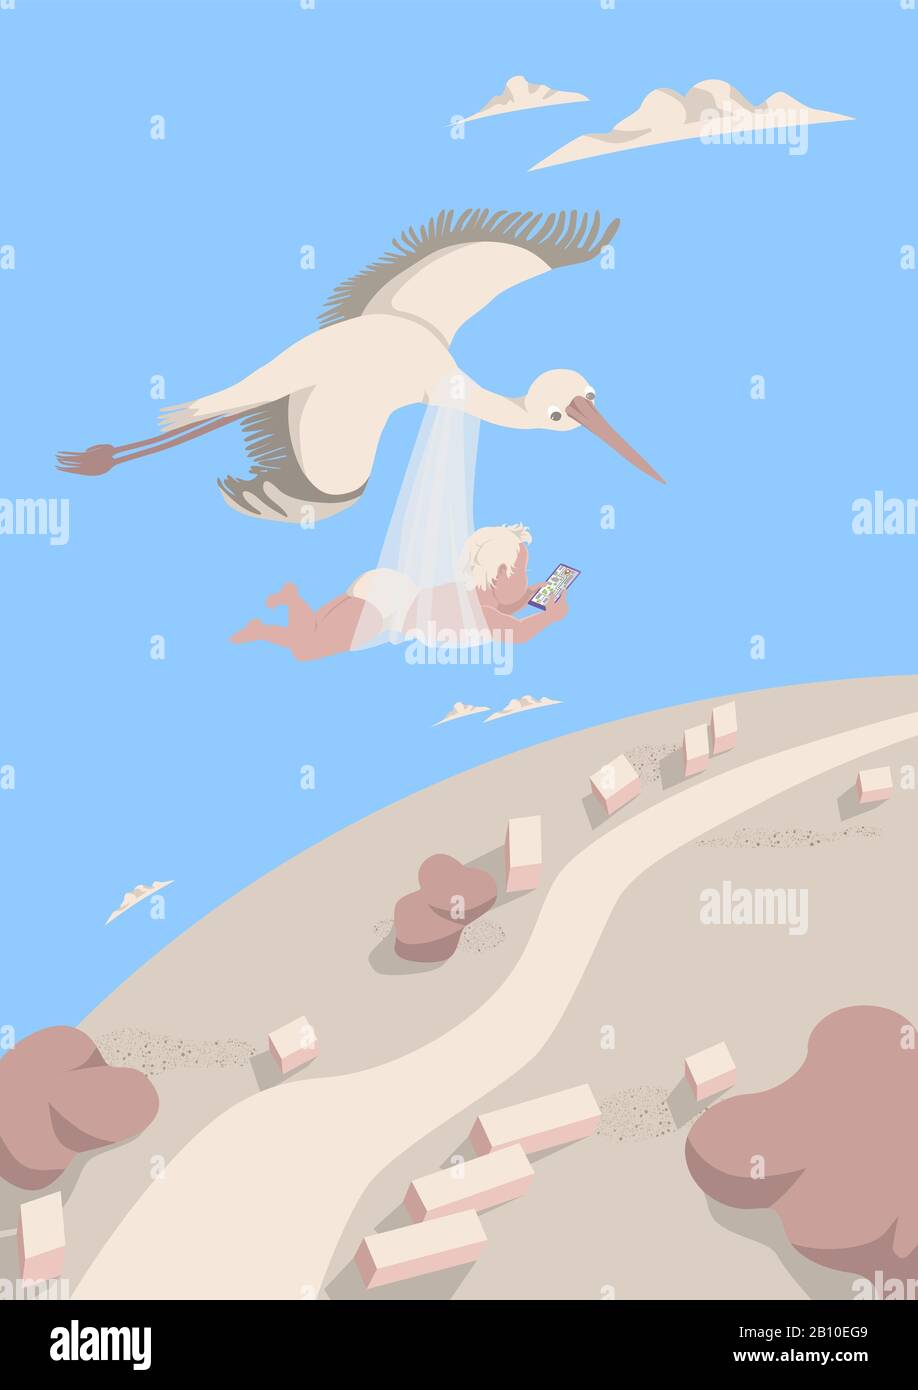 Der Storch trägt ein Baby mit Blick auf den Weg auf dem Navigator im Smartphone. Ein Vogel fliegt hoch im Himmel unter den Wolken. Postkartenkonzept Postc Stock Vektor